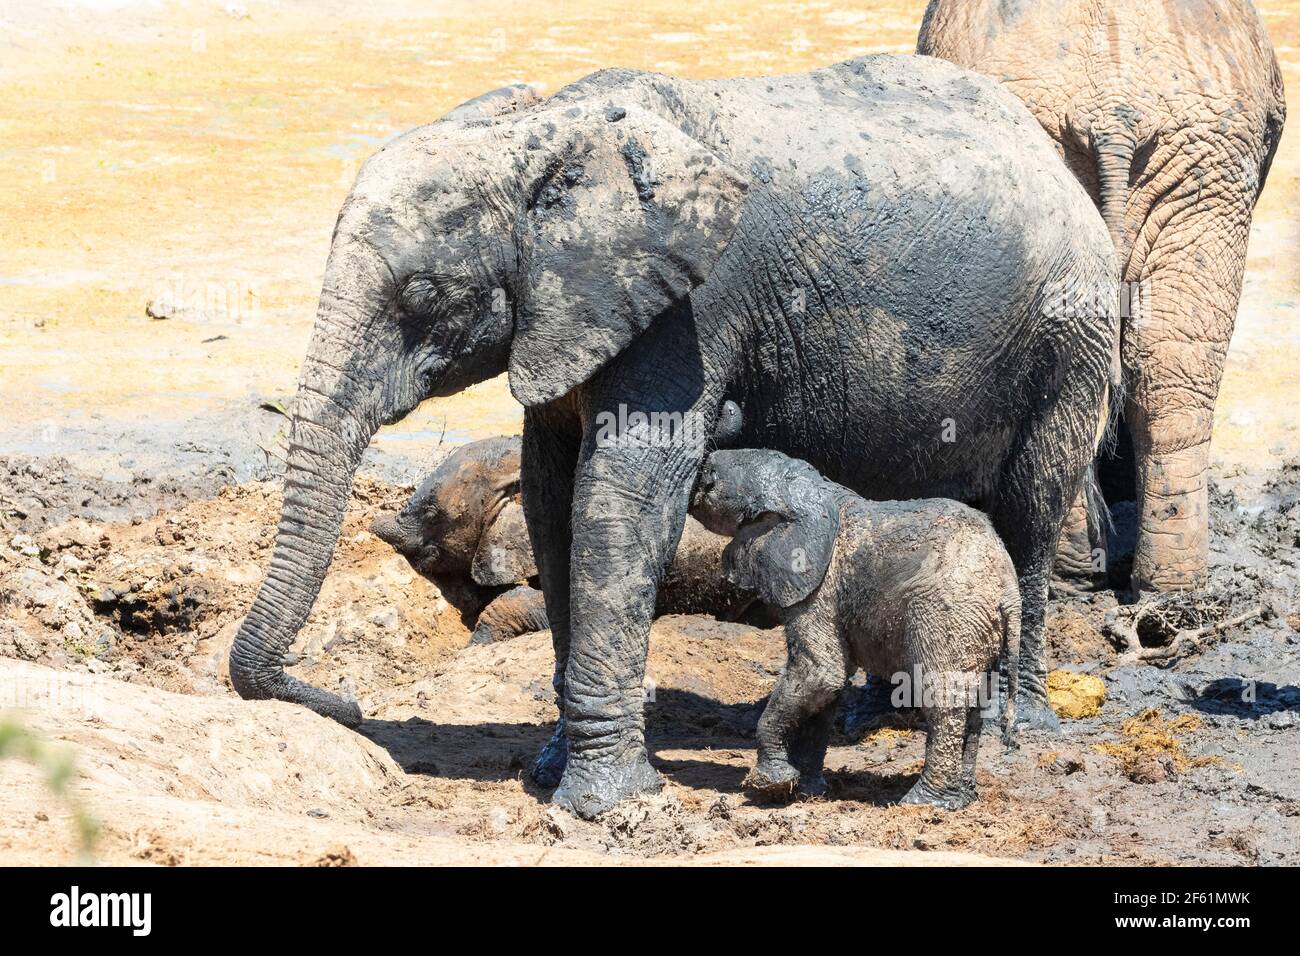 Baby vitello africano Elefante (Loxodonta africana) che succhia la madre in un bagno di fango, Addo Elephant National Park, Capo Orientale, Sud Africa Foto Stock